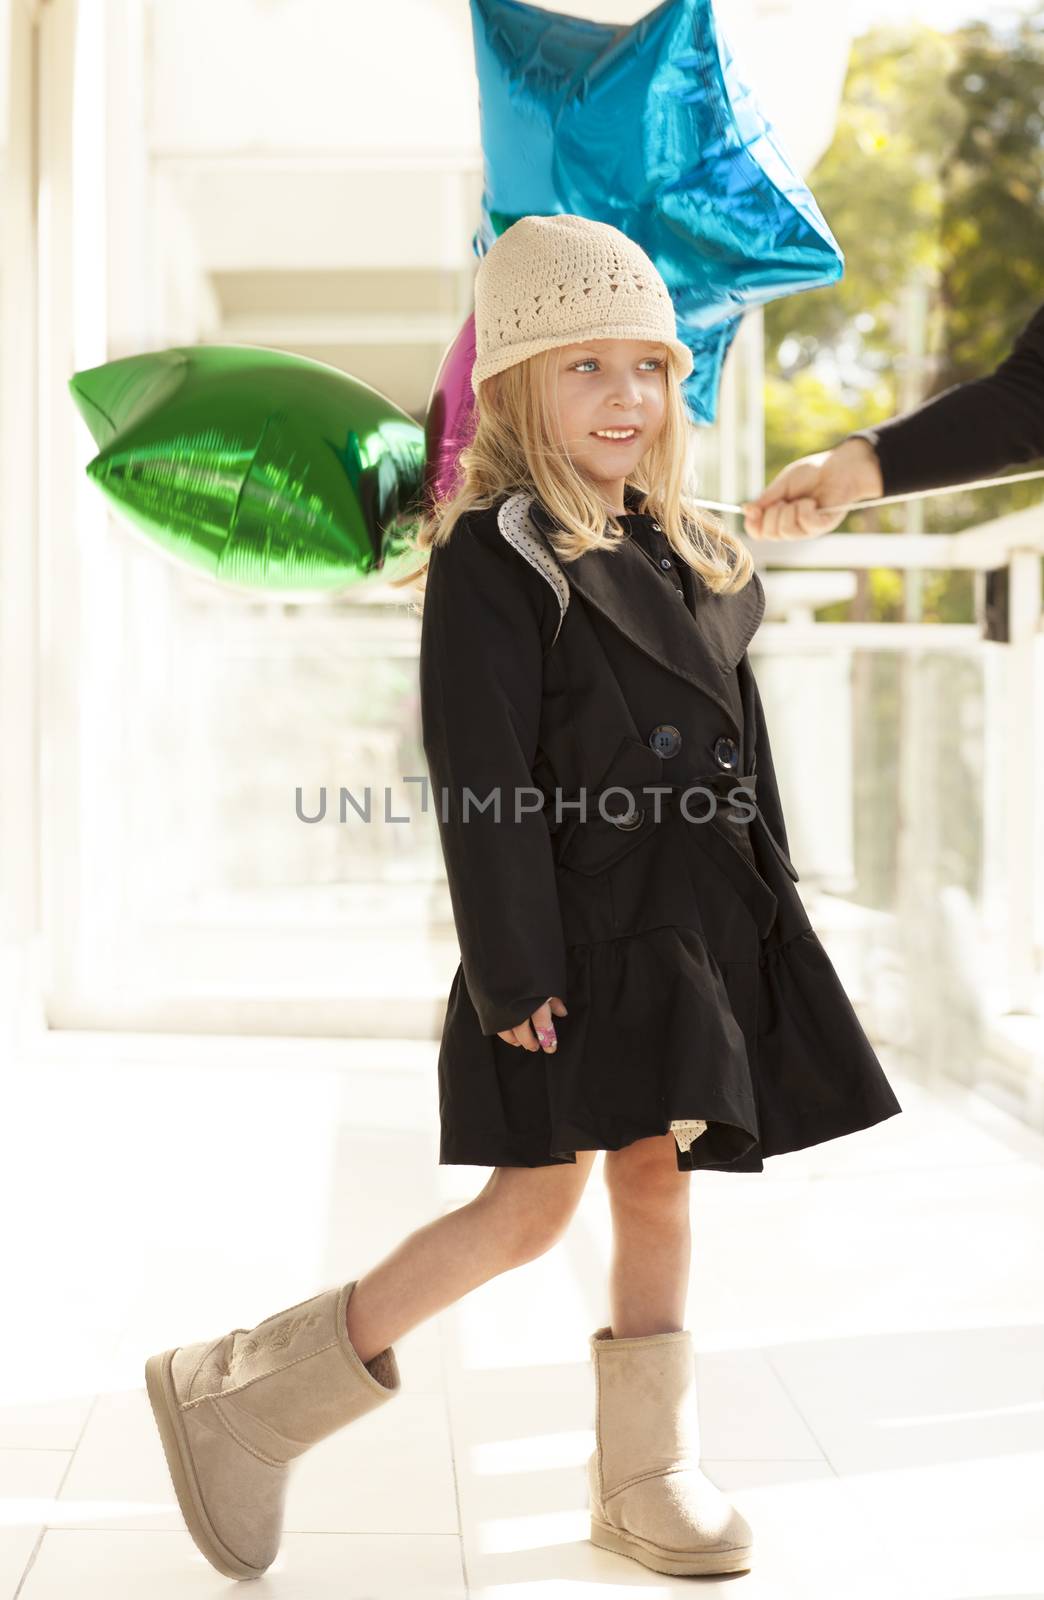 Cute girl with balloons by veronicagomezpola